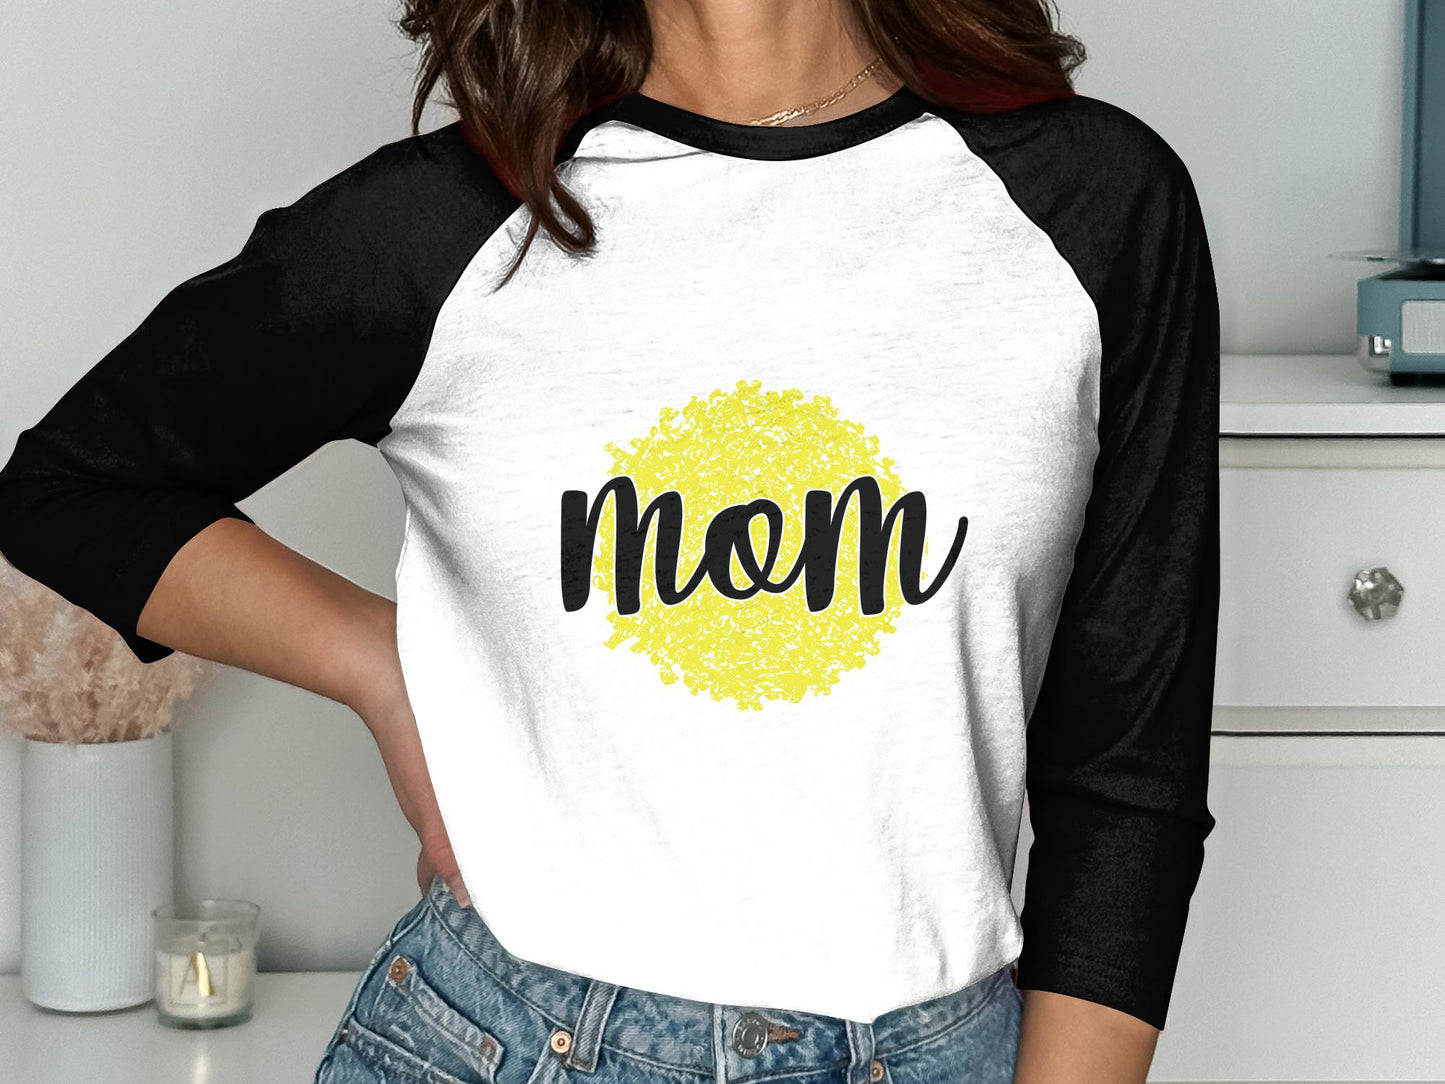 Mom on Pom Pom T-Shirt